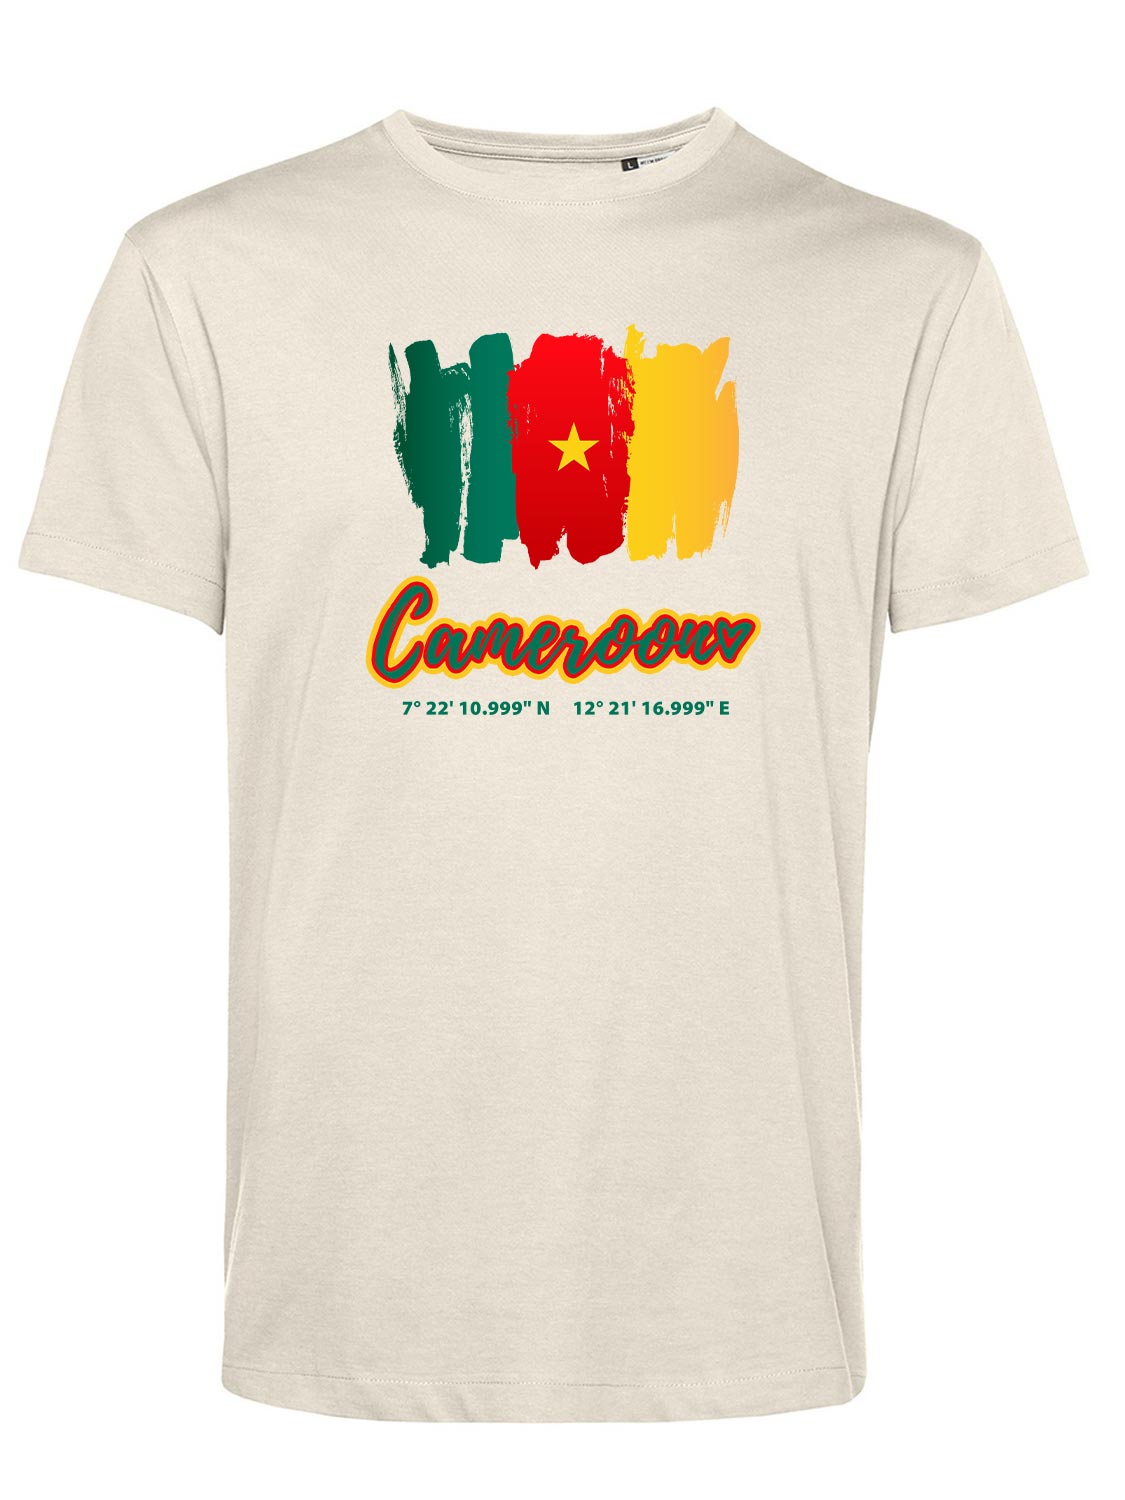 Shirt-Kamerun-1